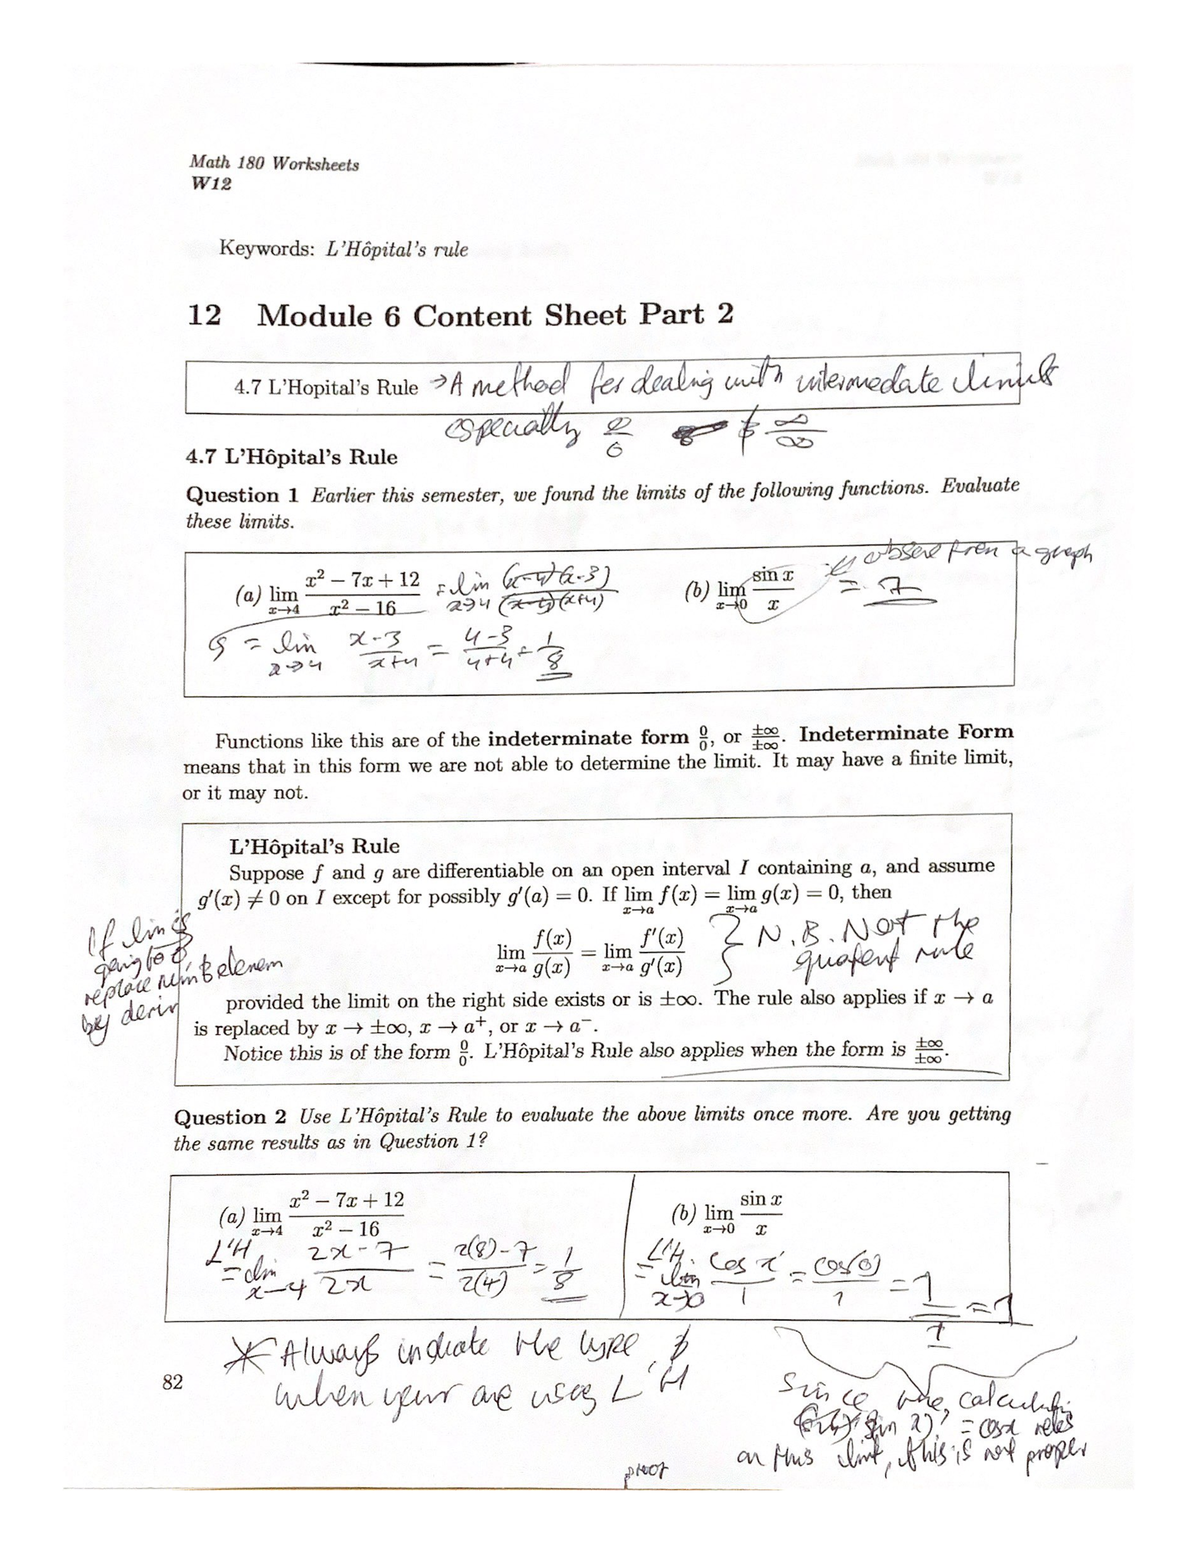 Math 180 Uic Worksheet Answers